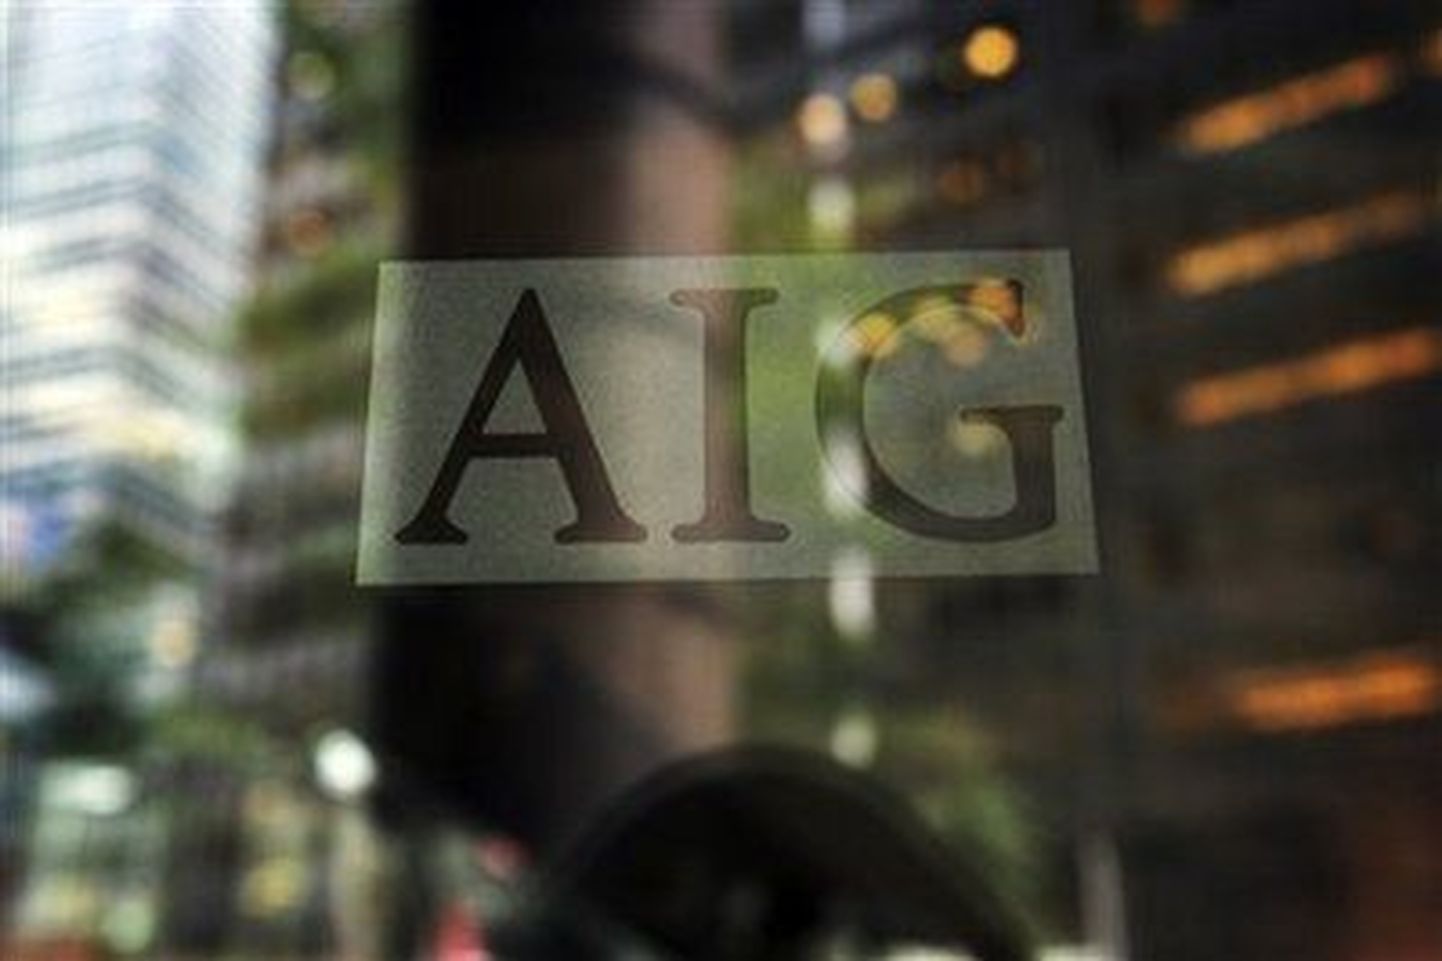 AIG logo.